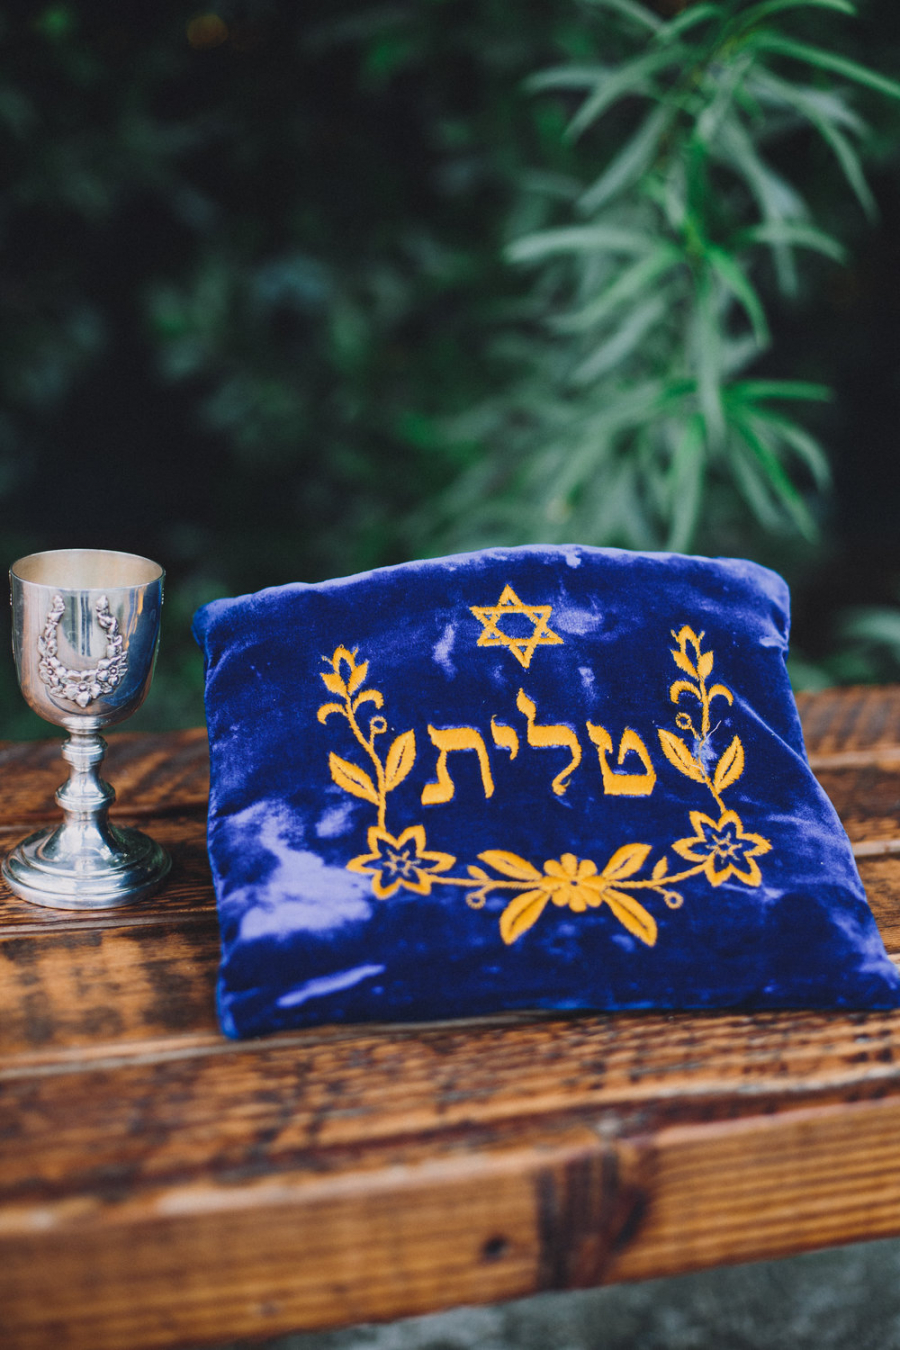  tradição de casamento judaico